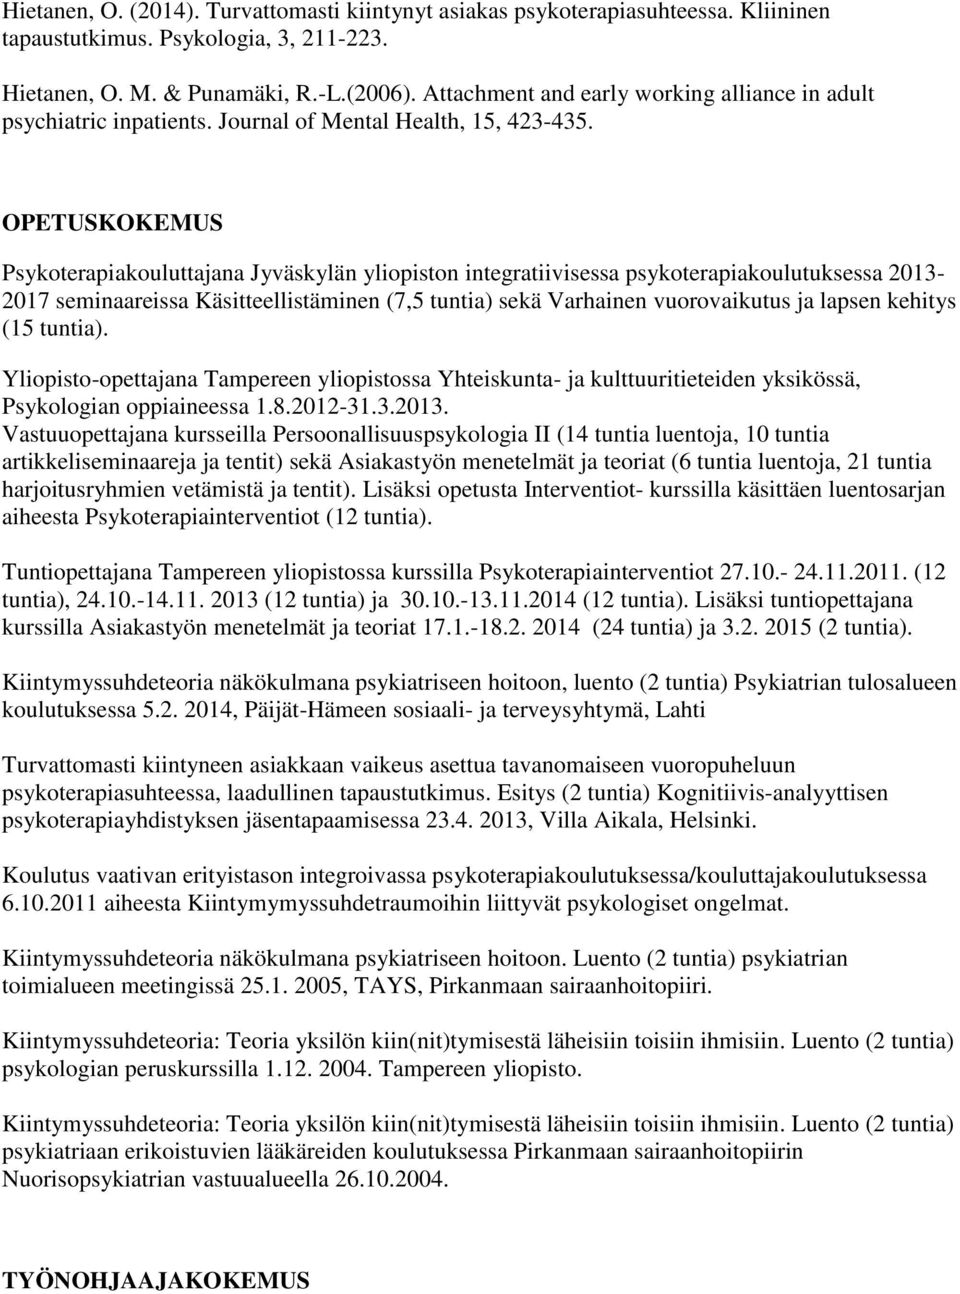 OPETUSKOKEMUS Psykoterapiakouluttajana Jyväskylän yliopiston integratiivisessa psykoterapiakoulutuksessa 2013-2017 seminaareissa Käsitteellistäminen (7,5 tuntia) sekä Varhainen vuorovaikutus ja